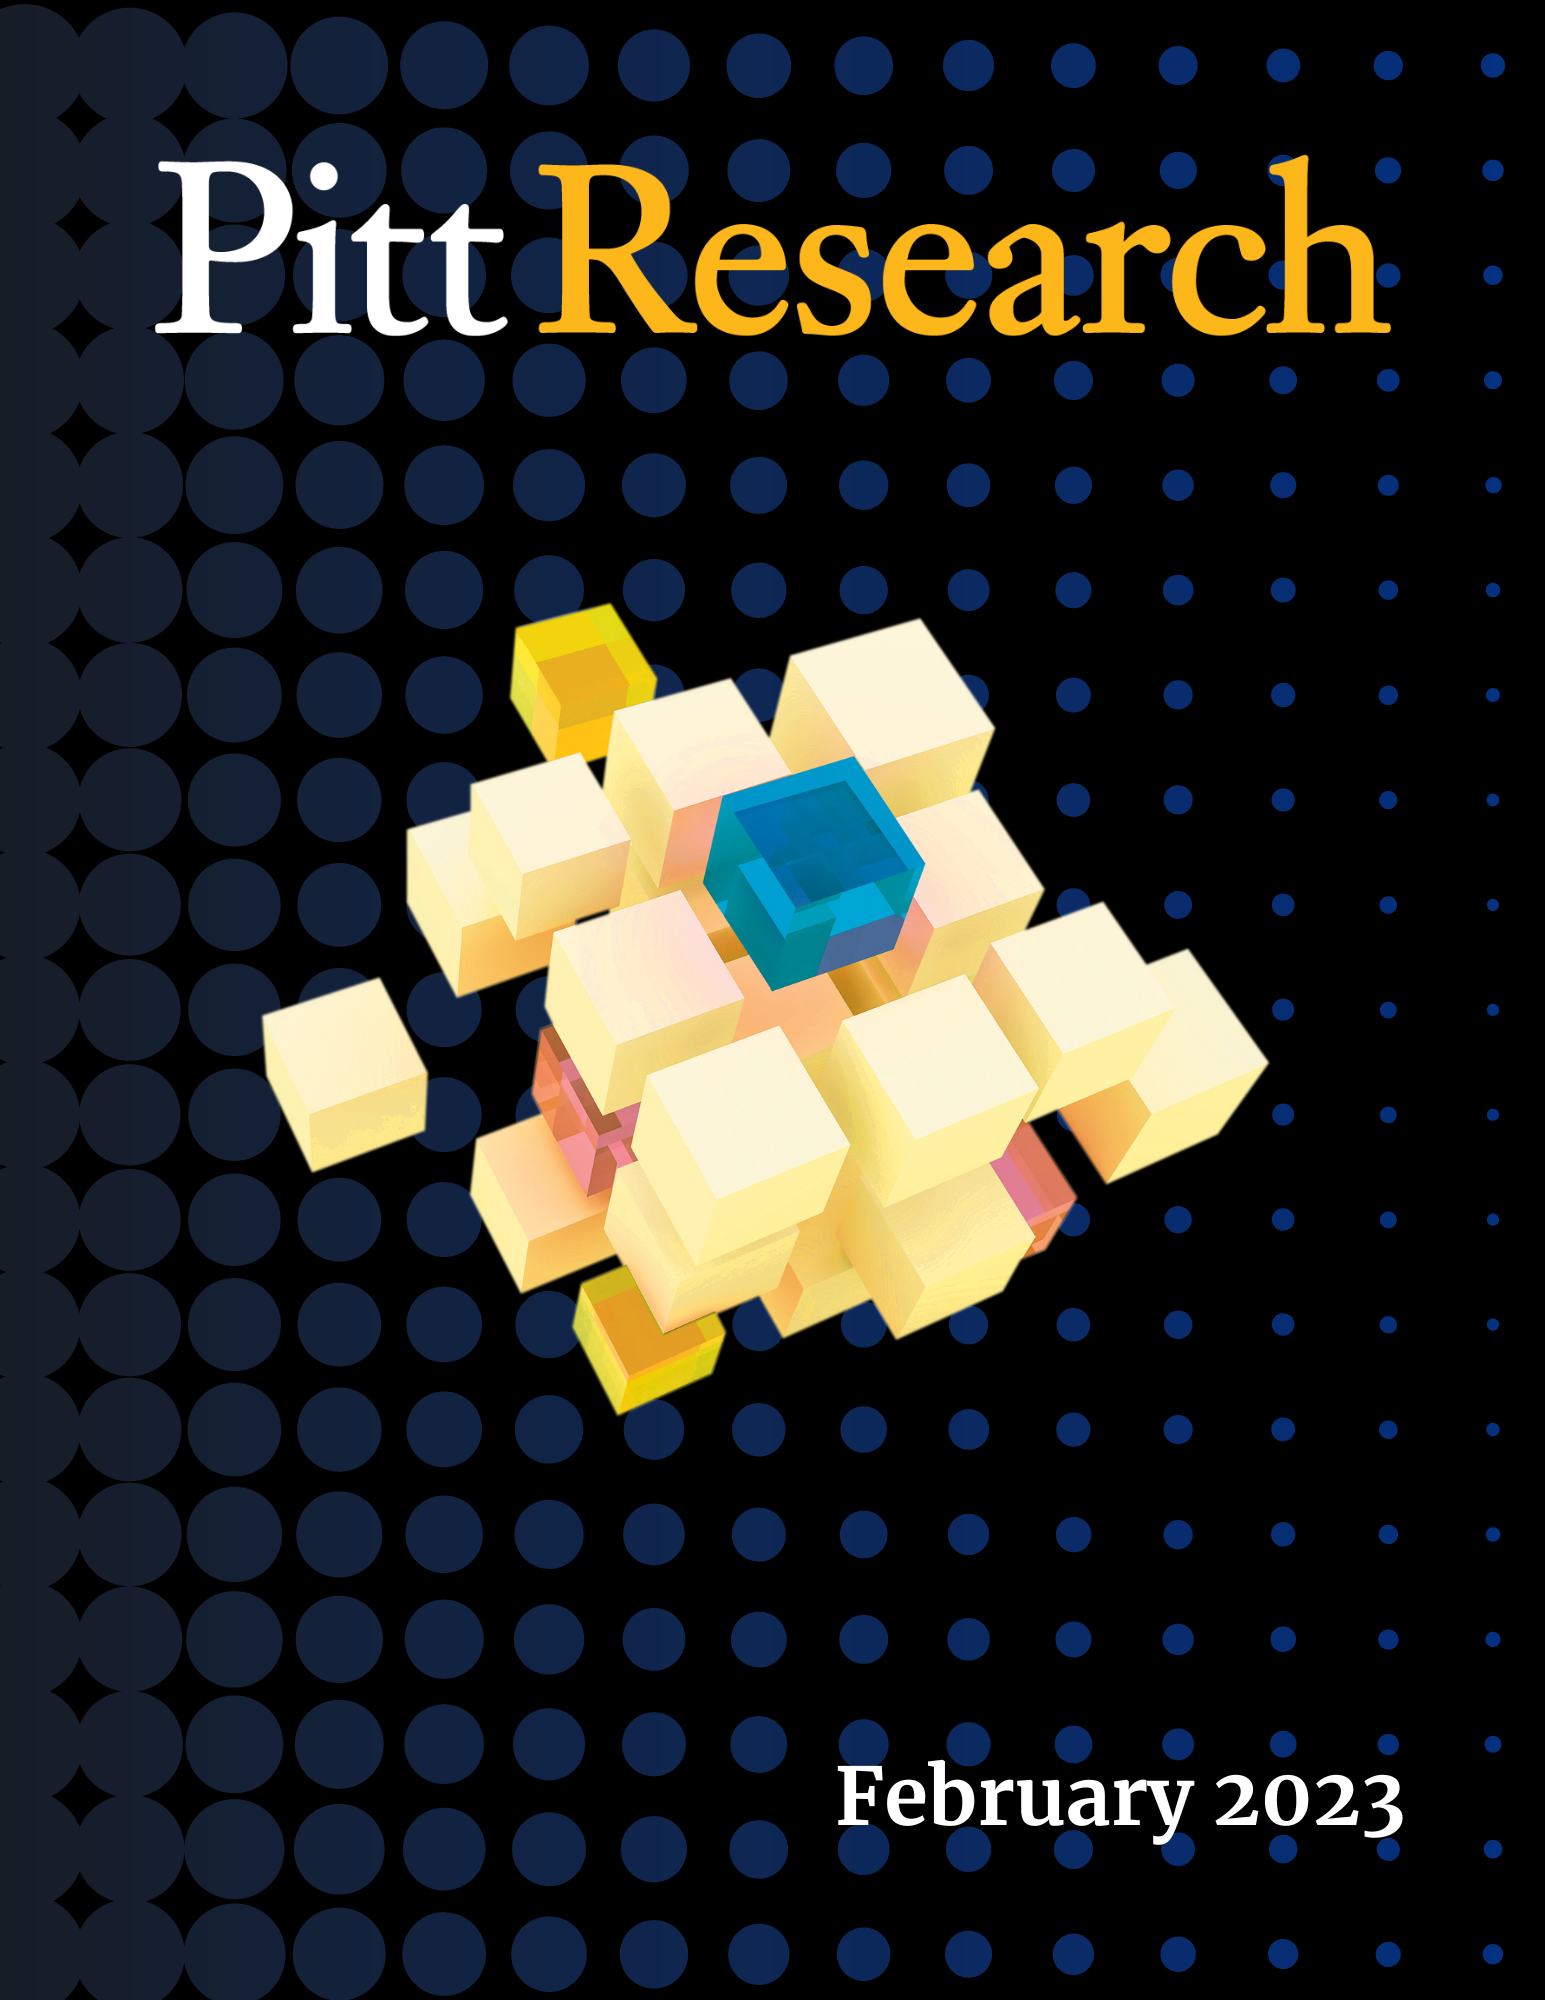 Pitt Research Newsletter for February 2023